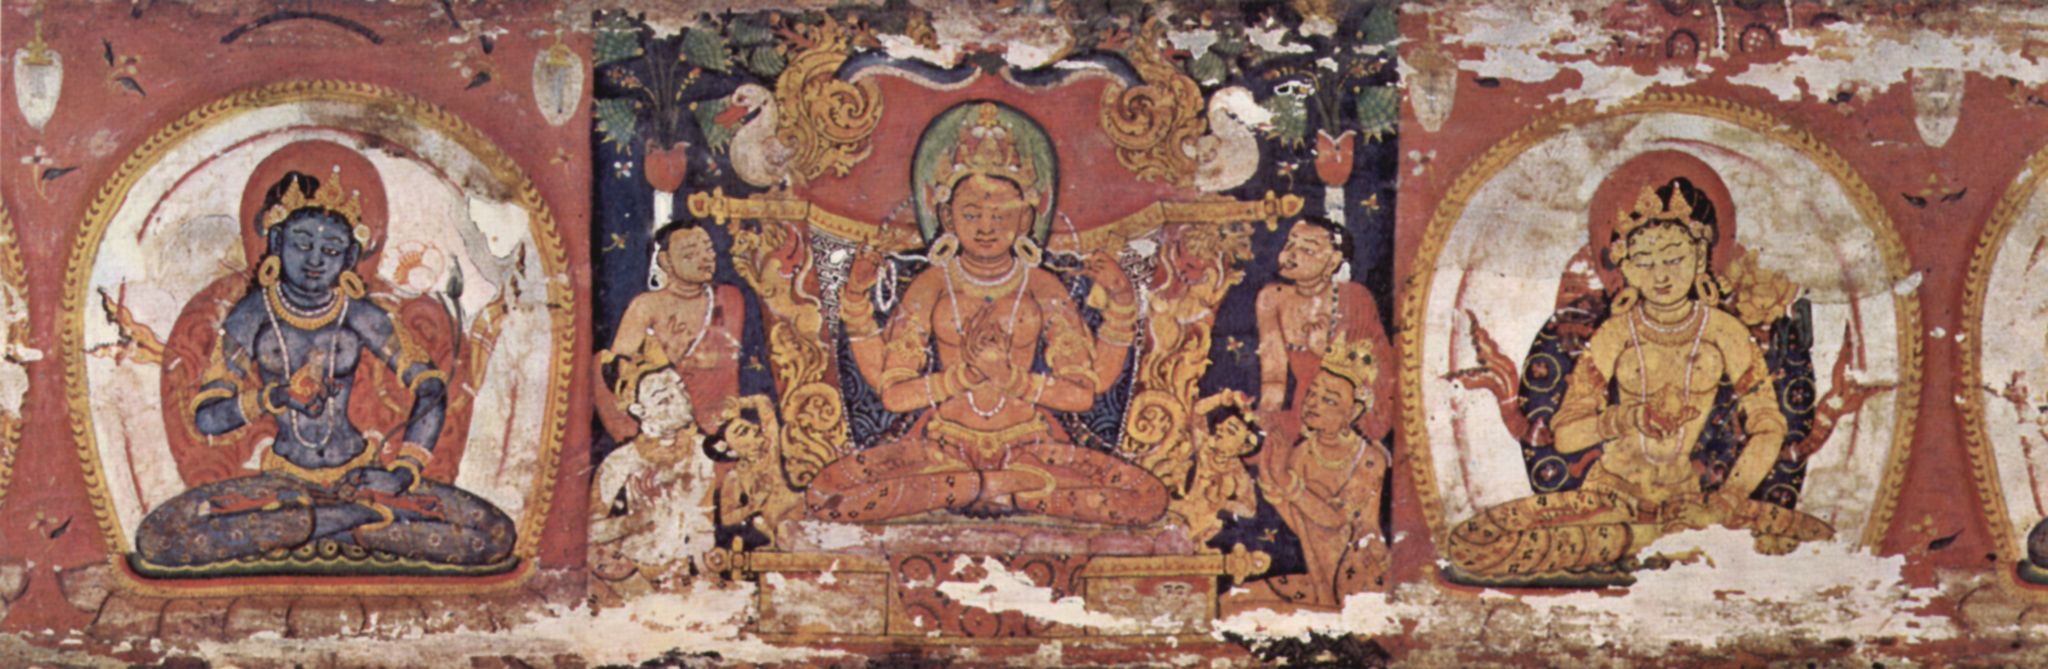 Indischer Maler um 1080: Prajnpramit-Manuskript (Vollendung der Weisheit), Szene: Bodhisattva Prajnpramit